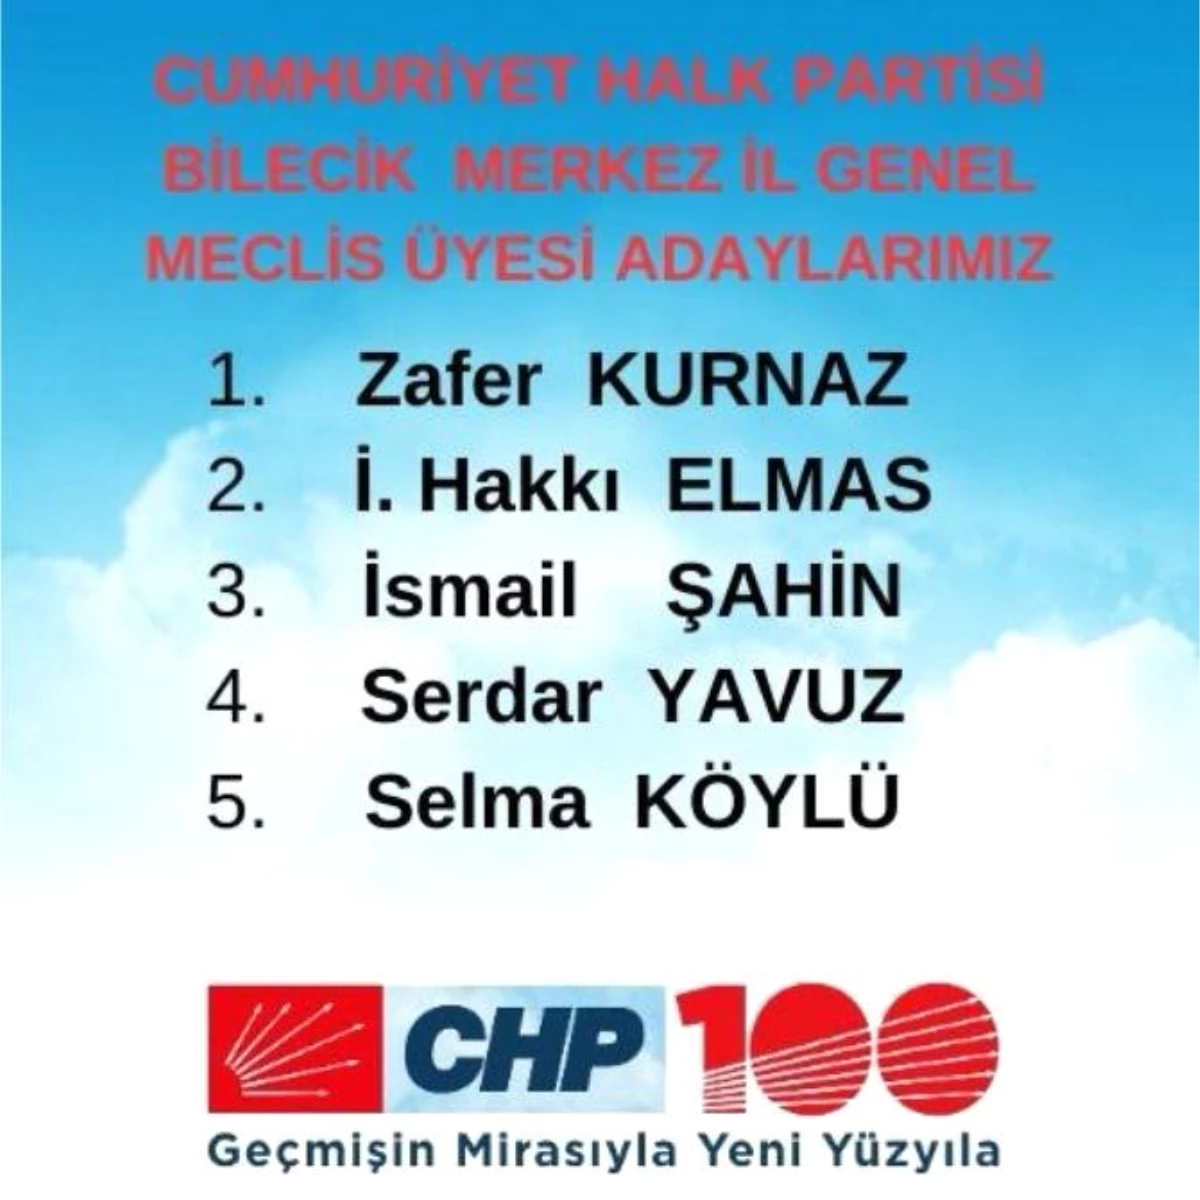 CHP Bilecik Merkez İlçe Başkanlığı, il genel meclis üyeleri aday sıralamasını değiştirdi